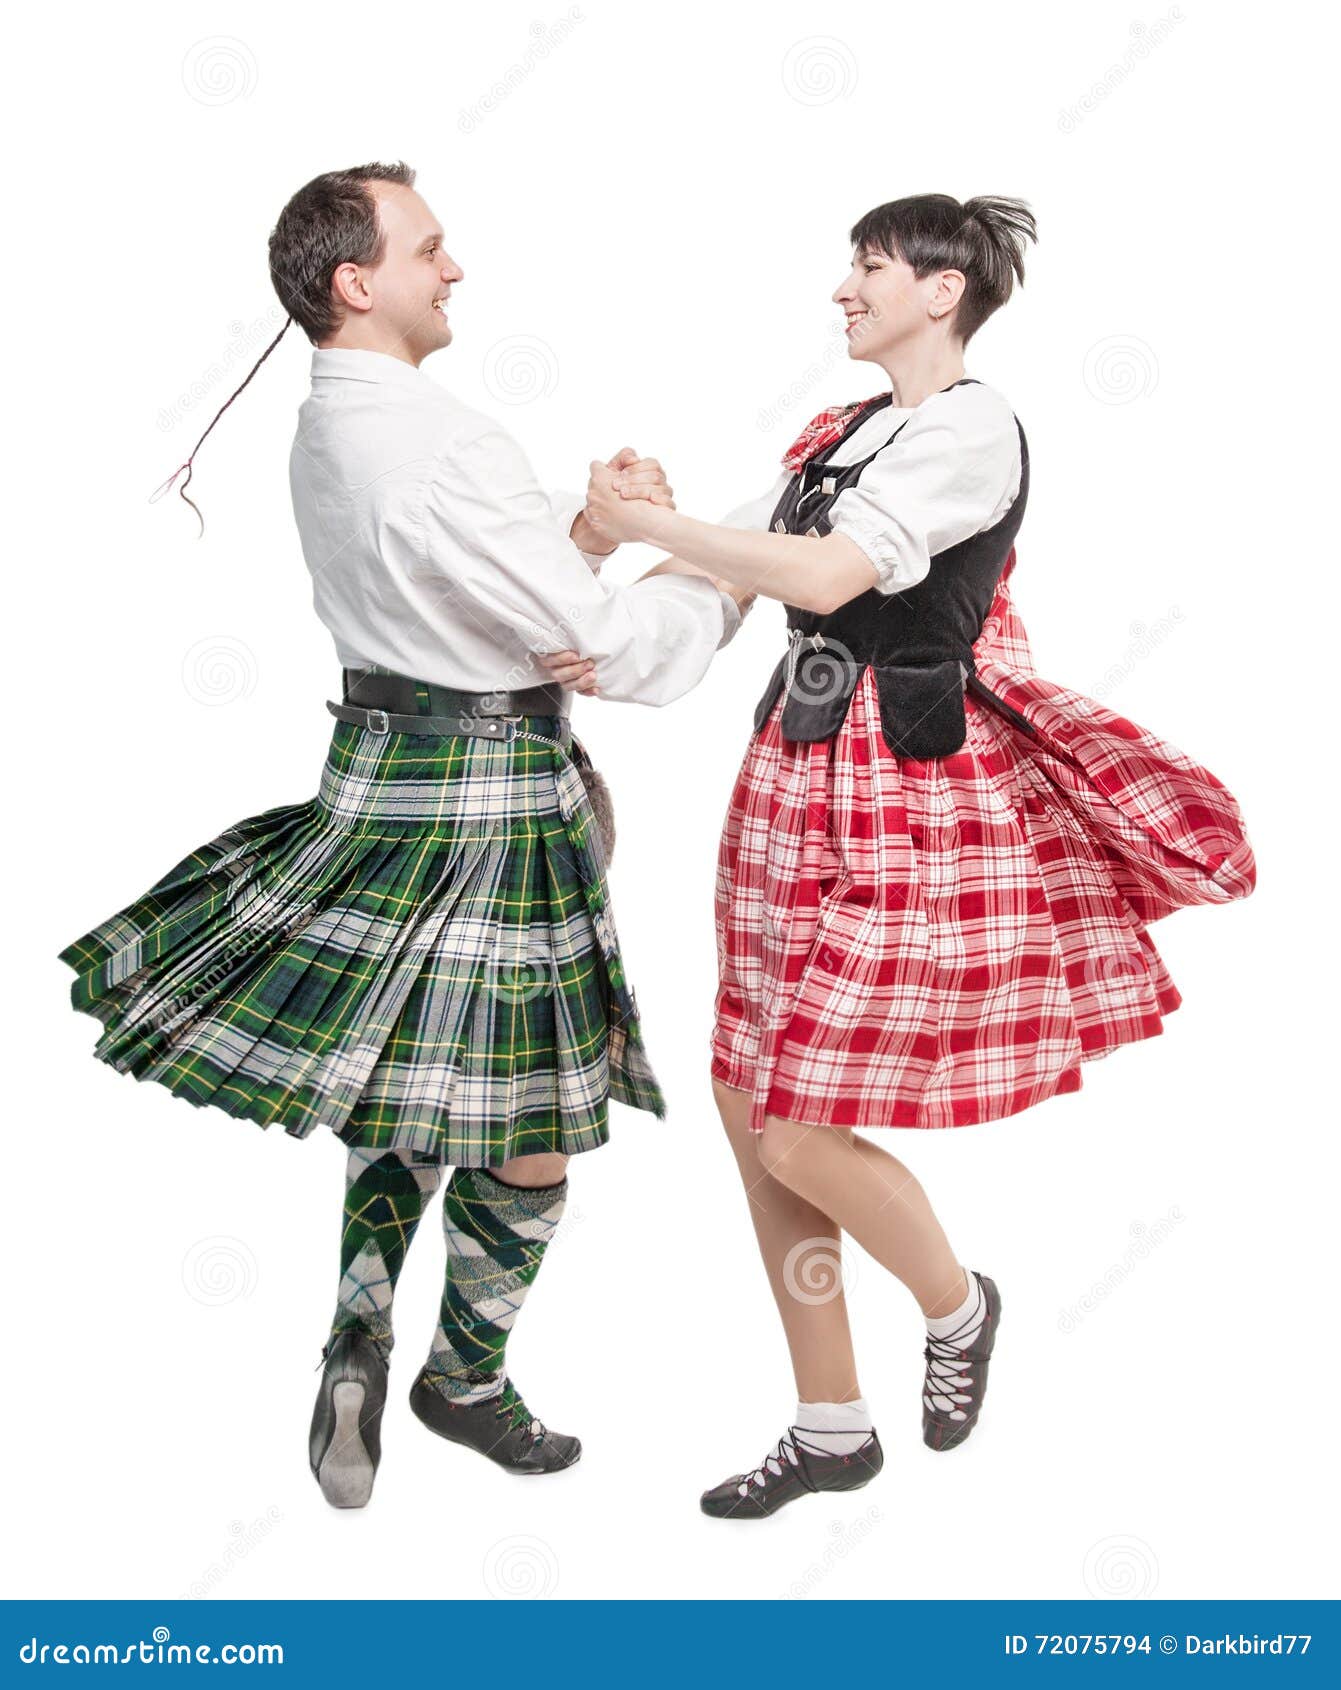 Плясать перед. Кейли танец Шотландия. Шотландские танцы мужские. Шотландцы танцуют. Шотландский килт танец.